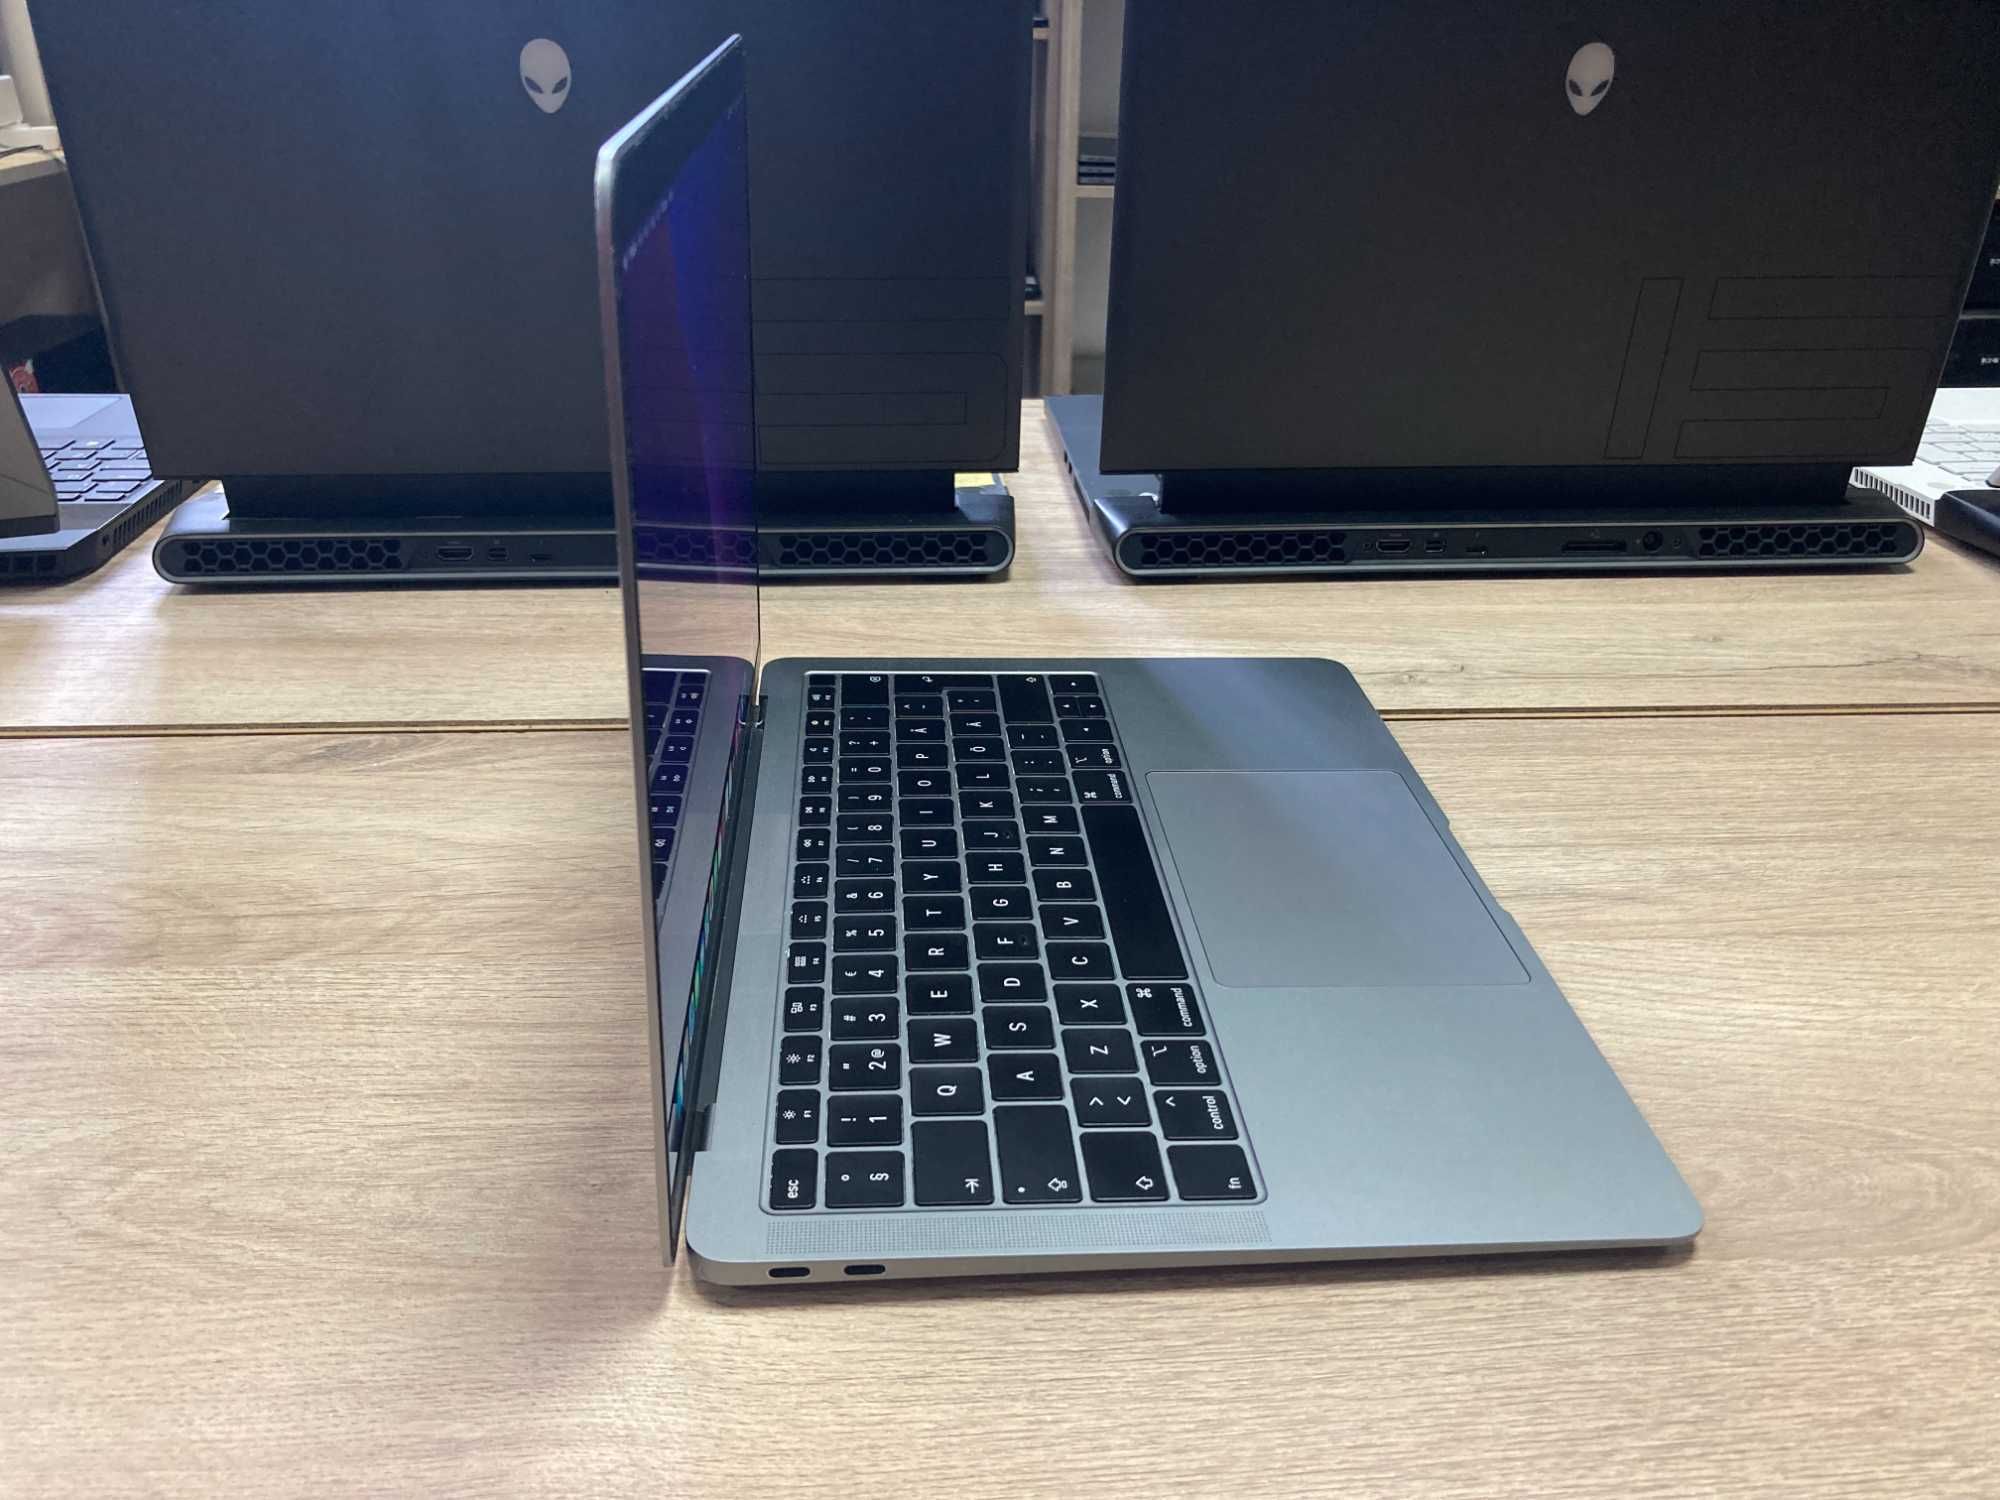 Лаптоп Apple Macbook AIR 13 2019 I5 16GB 256GB SSD с гаранция A1932